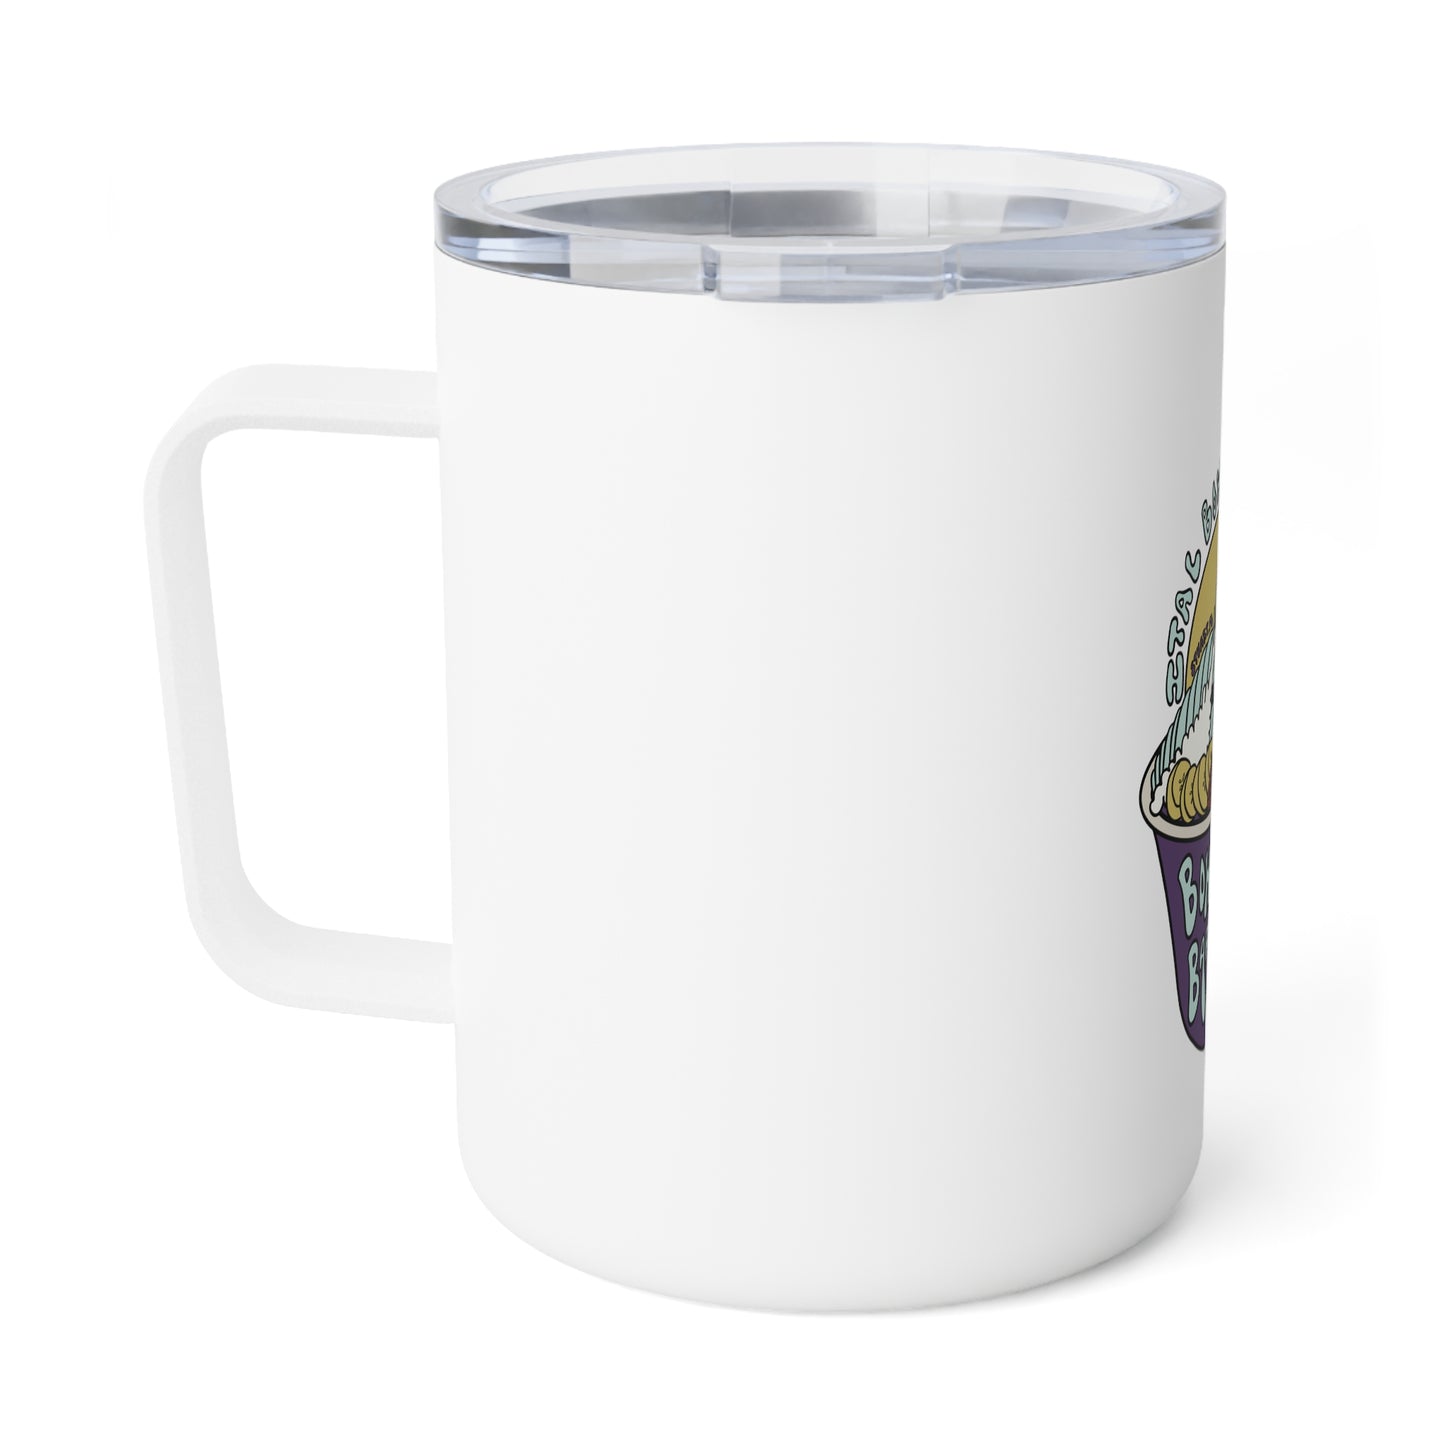 Bowls & Barrels Insulated Coffee Mug, 10oz